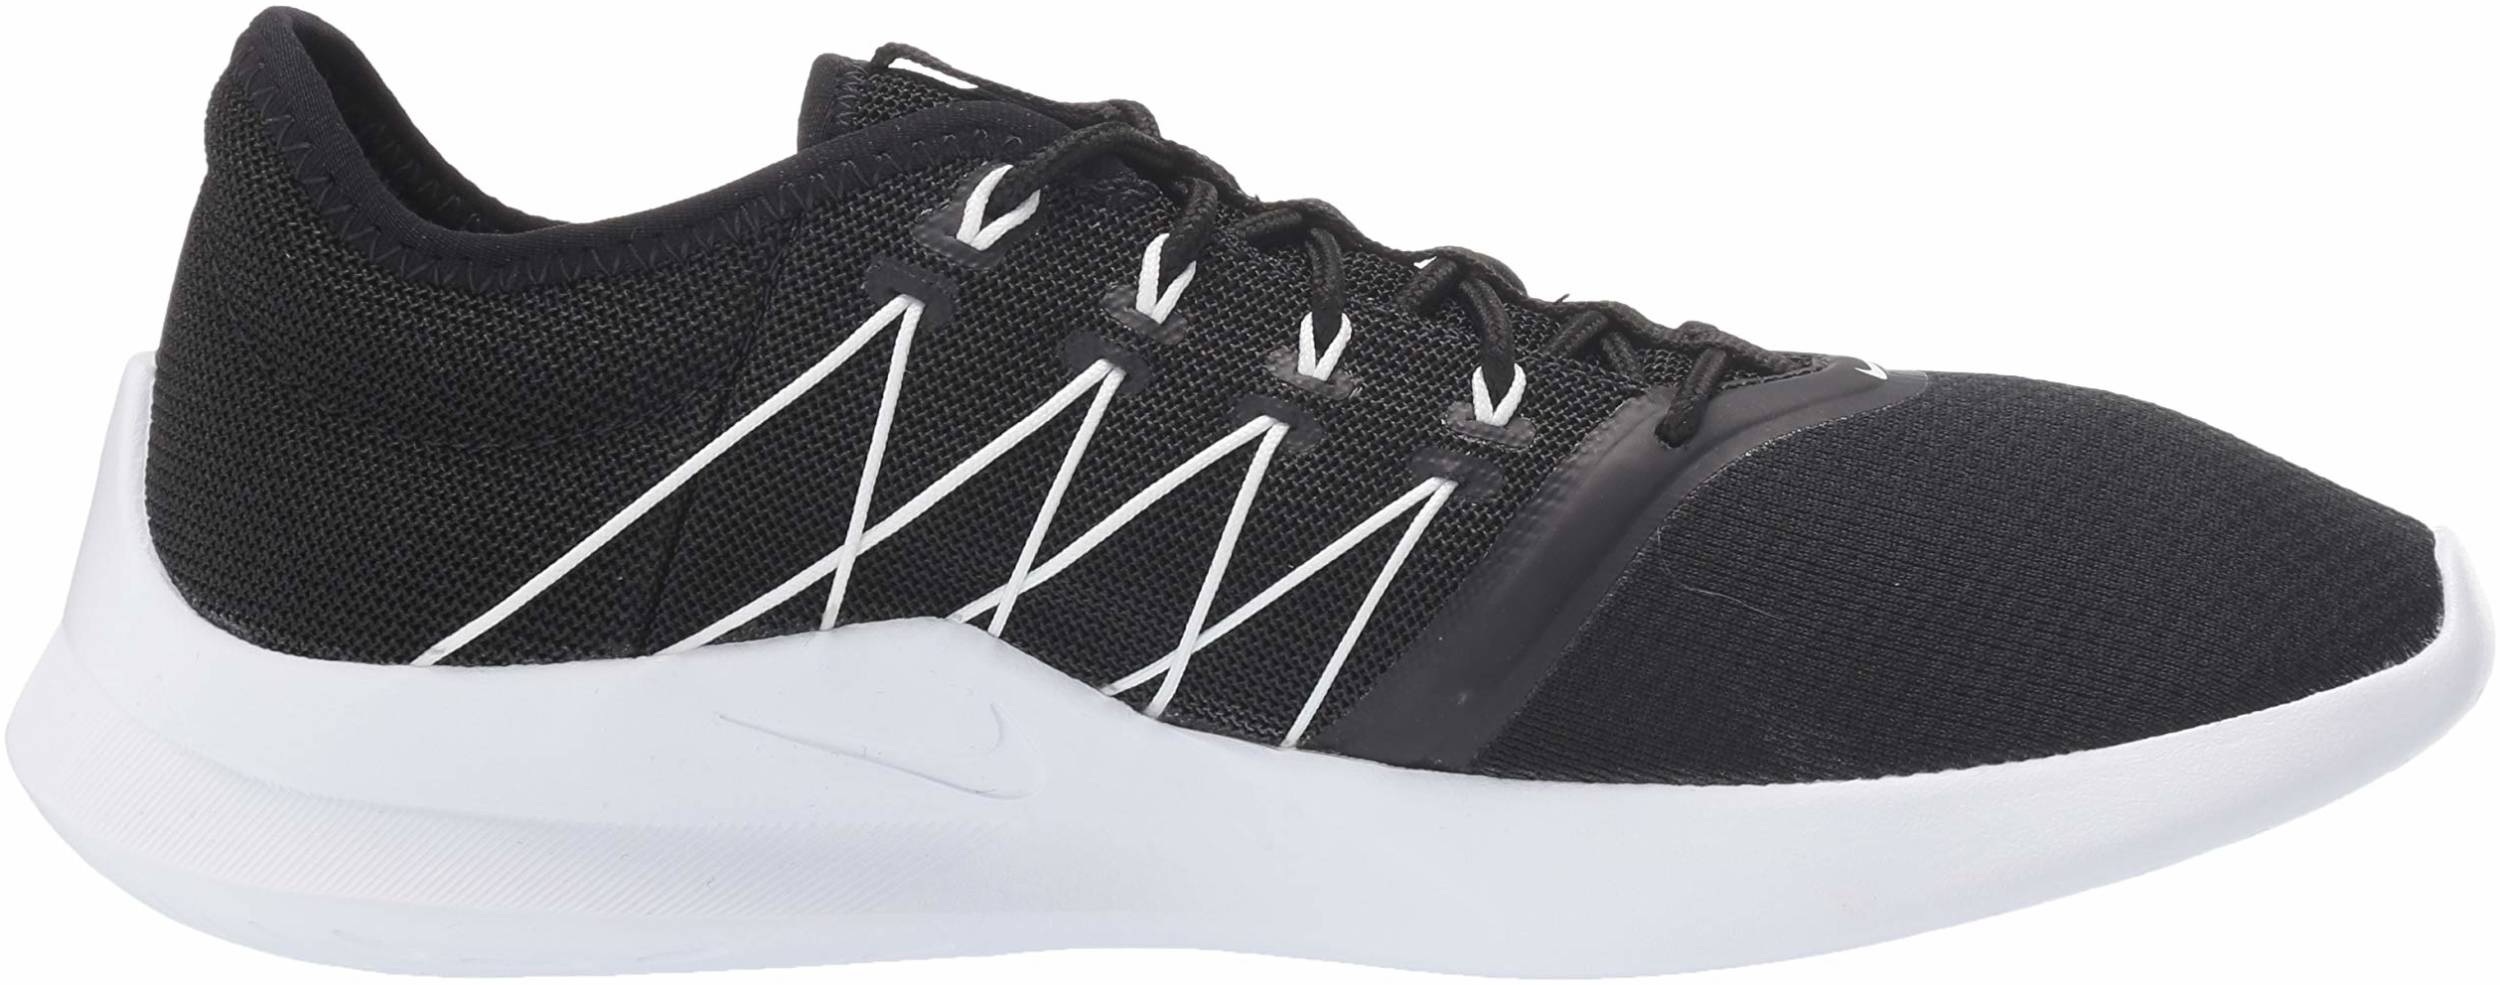 Nike Viale Tech Racer sneakers in 8 